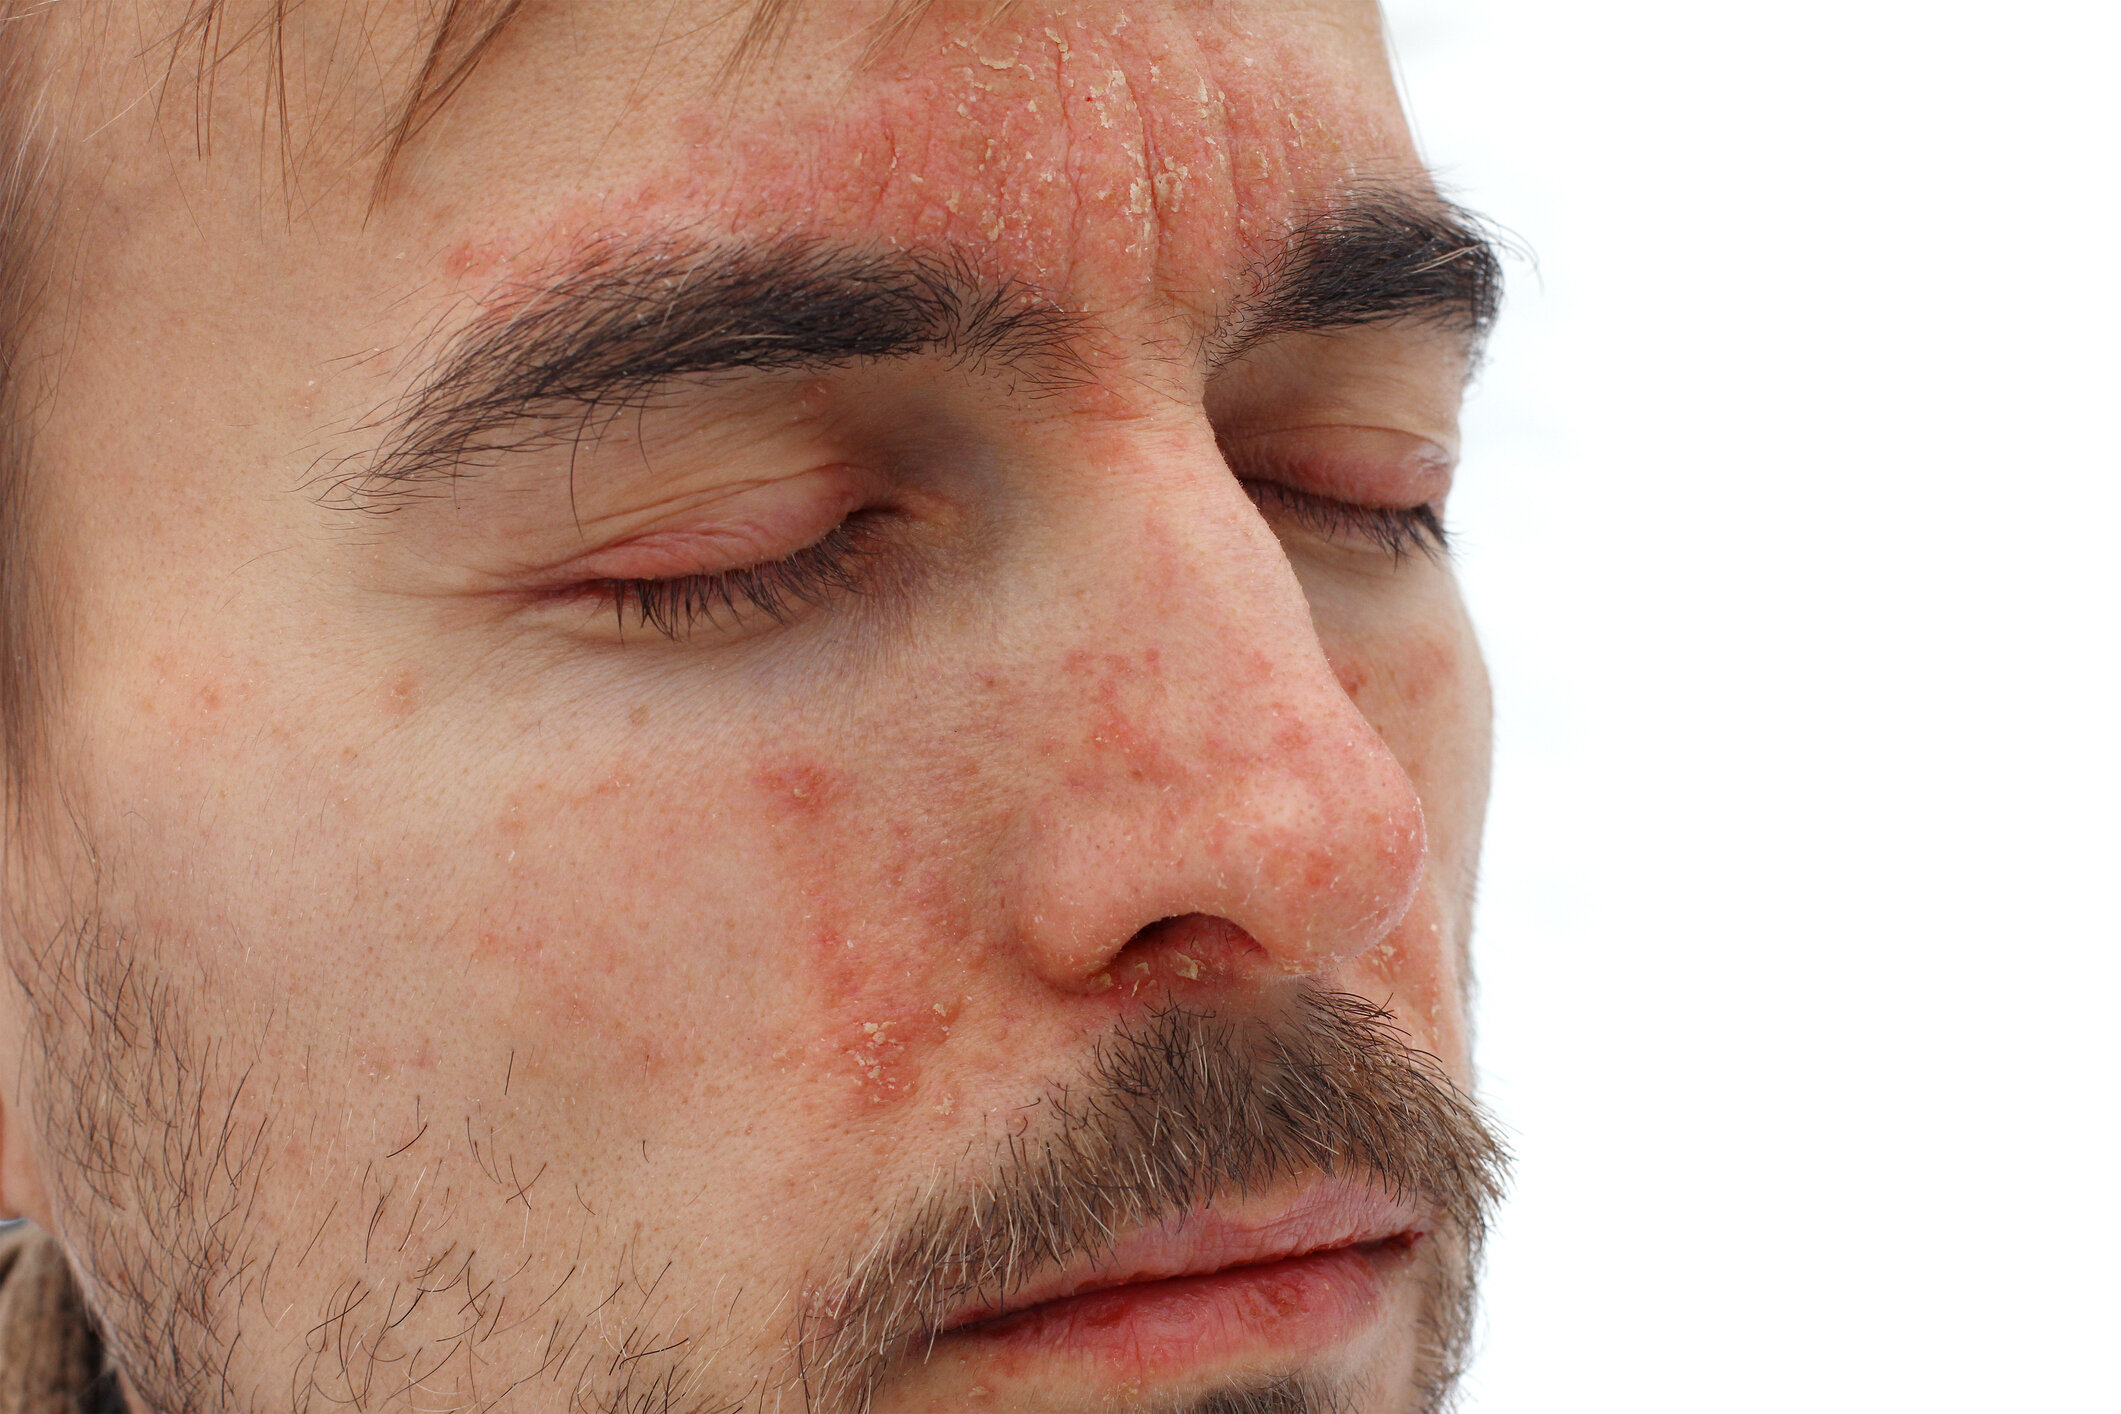 szeborreás pikkelysömör az arcon kezelés